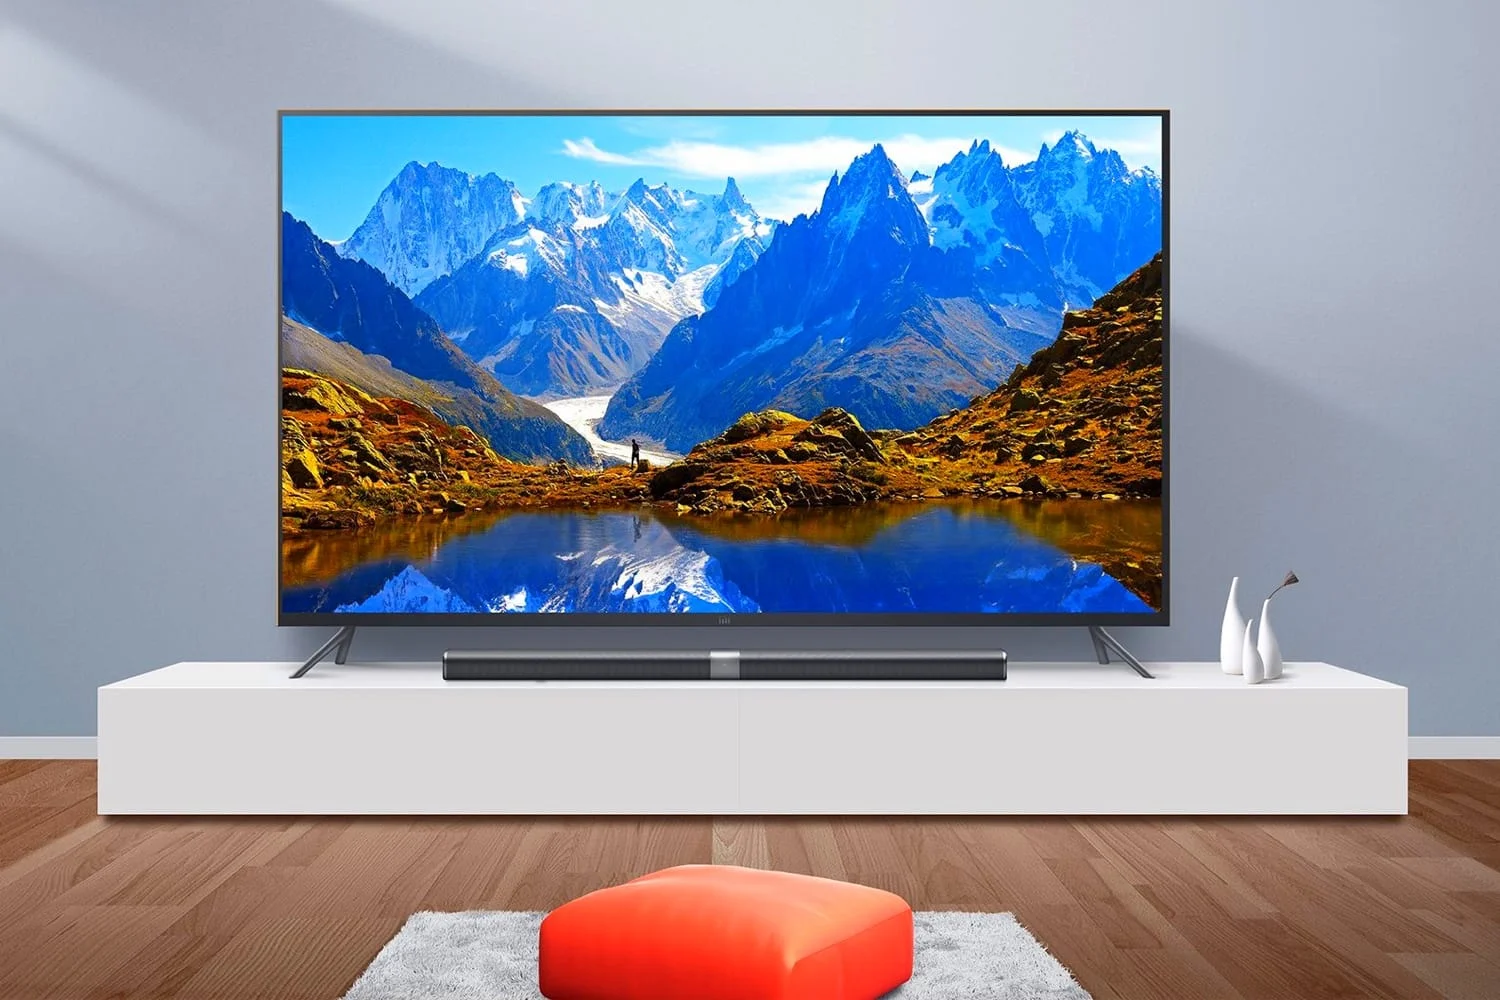 Почти без рамок: Xiaomi выпустила новую бюджетную линейку смарт-телевизоров Mi TV - фото 1